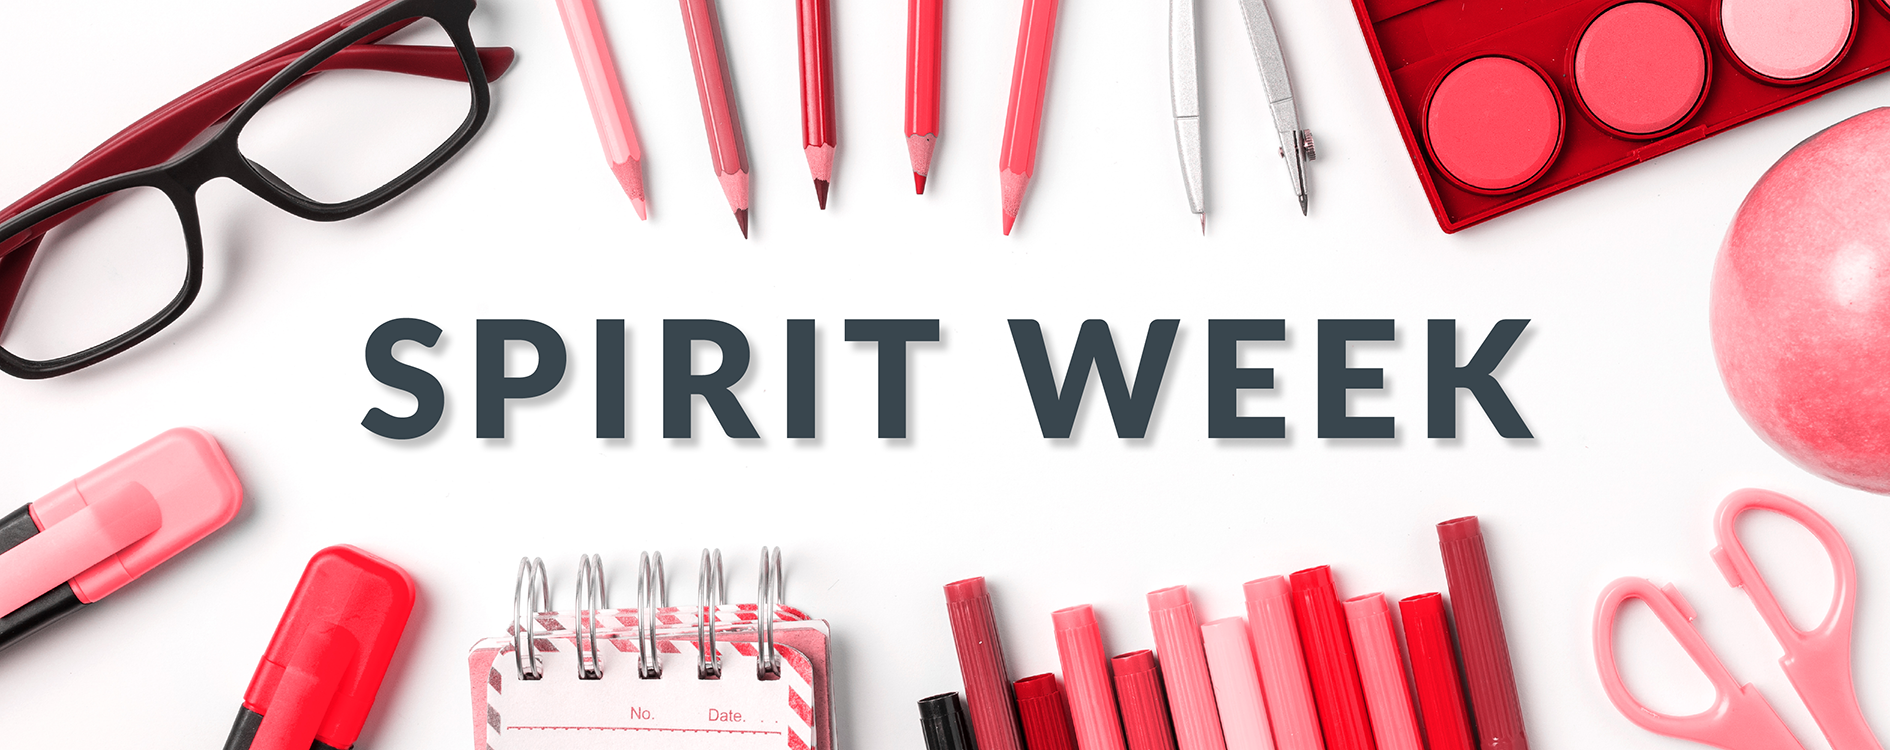 33A22_BlogPost_Feature Banner_Spirit Week